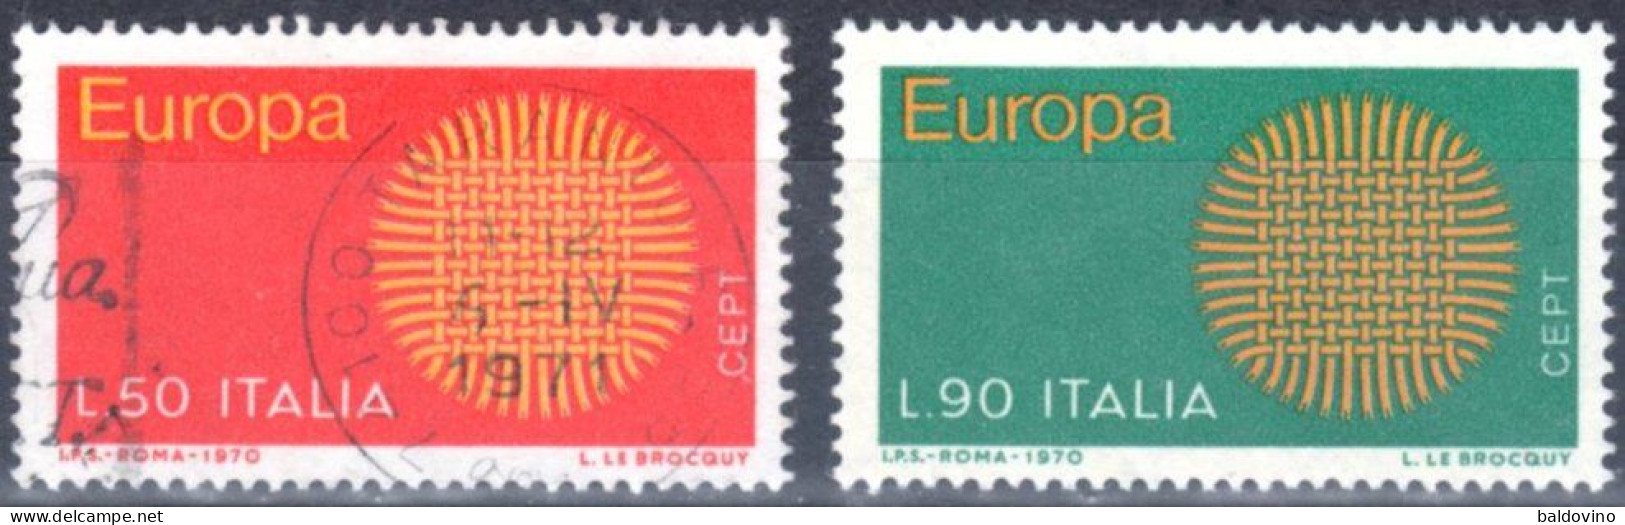 Italia 1970 Lotto 26 Valori (vedi Descrizione) - 1961-70: Usados